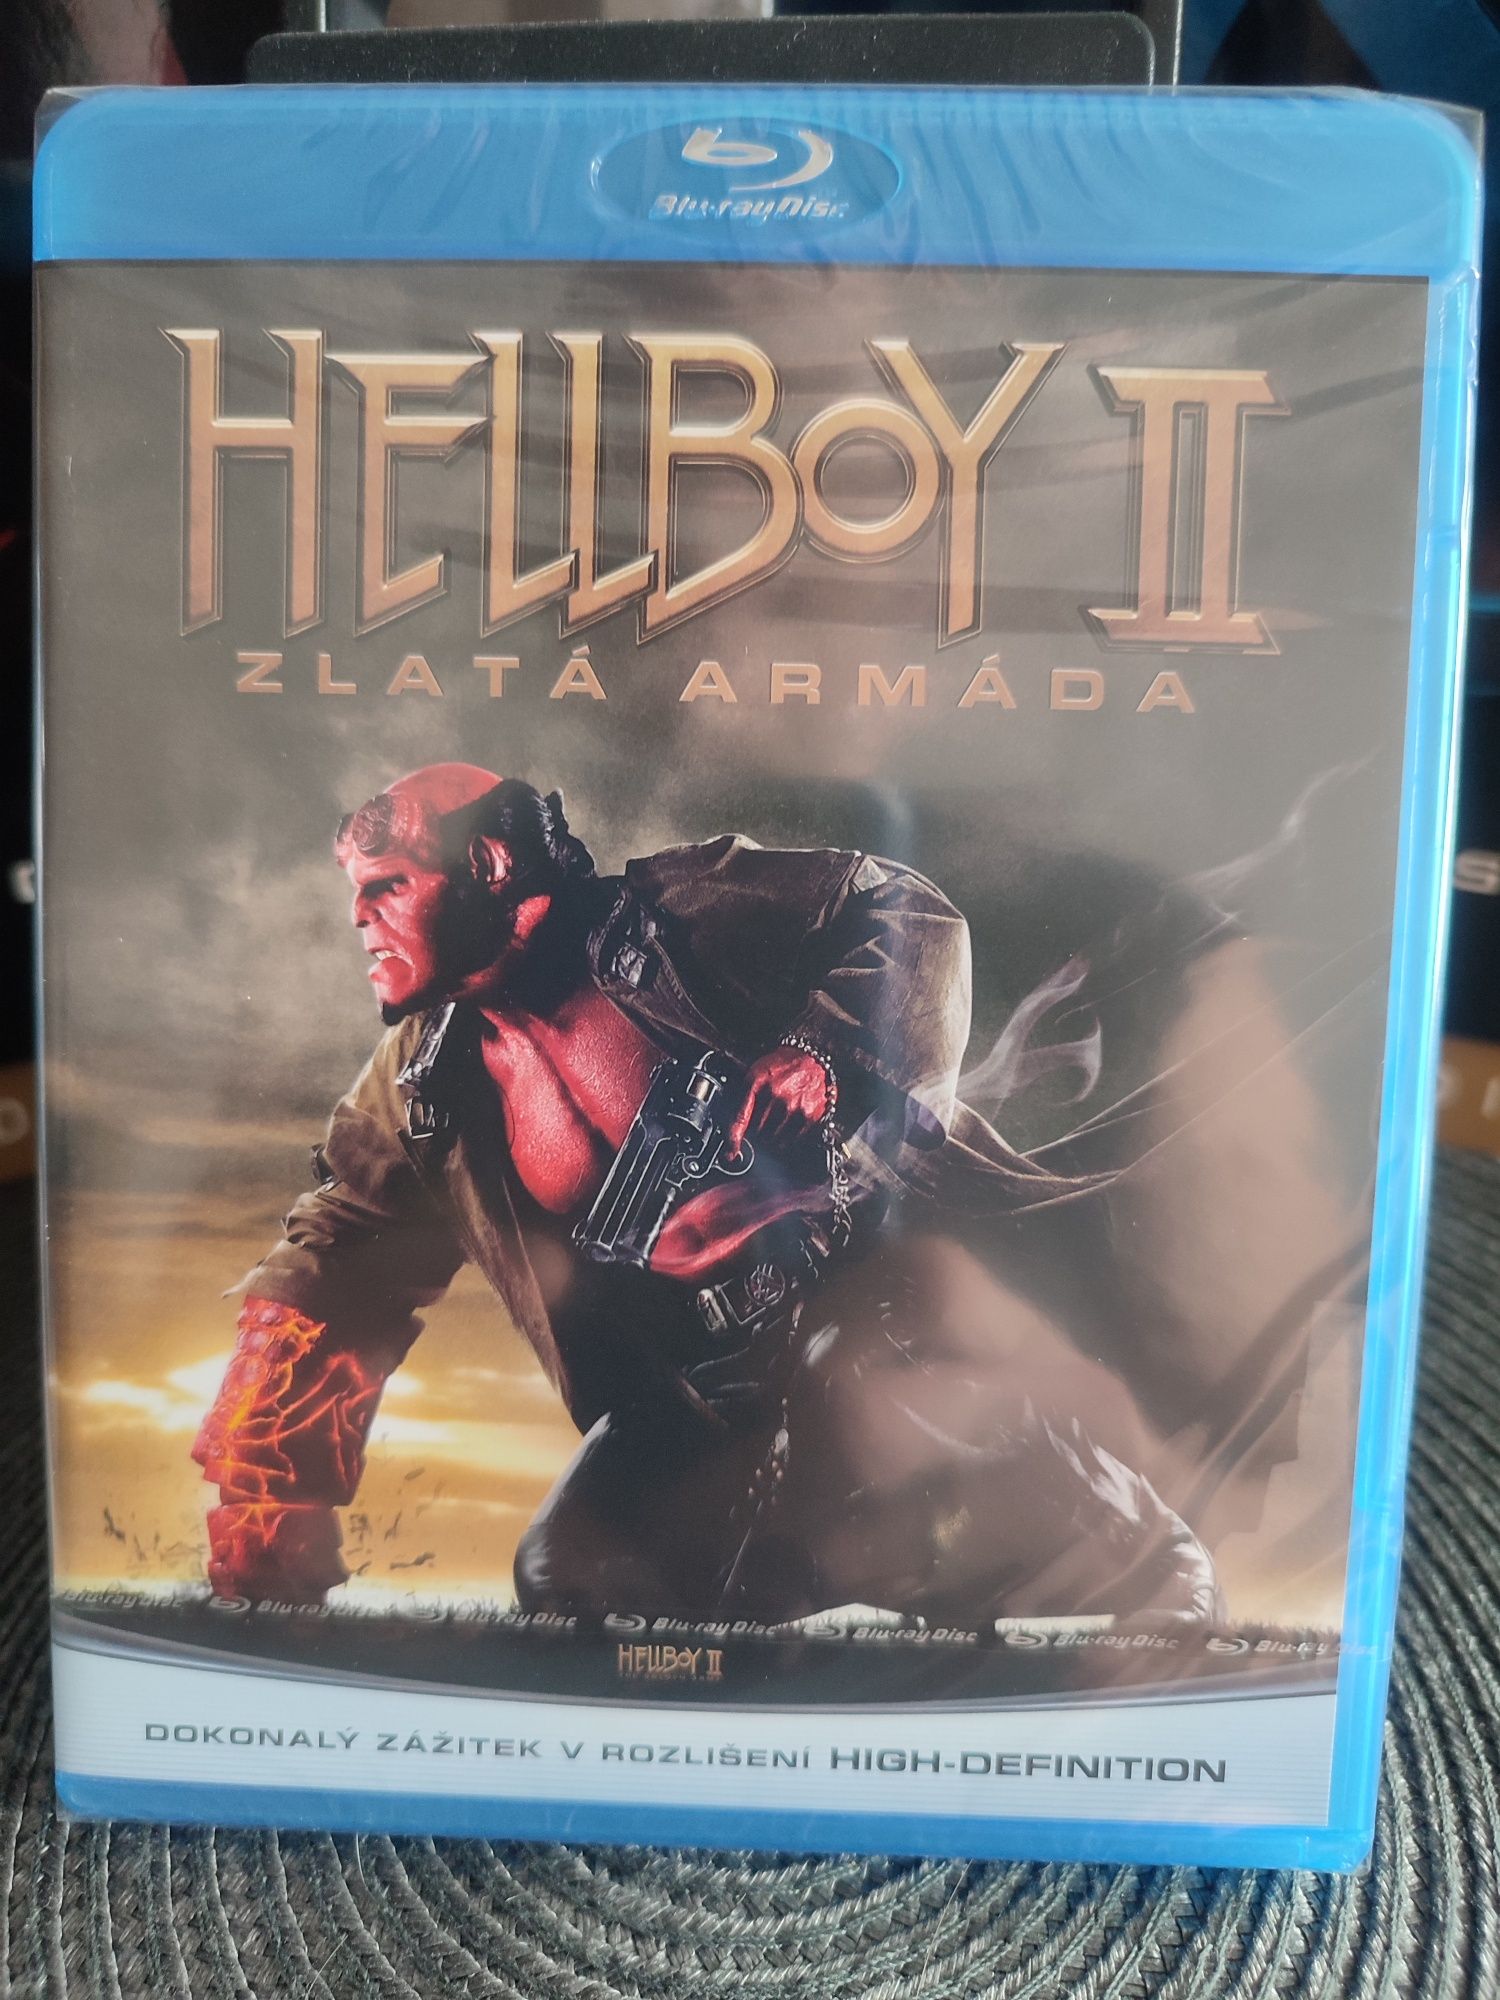 Film blu-ray Hellboy II złota armia Pl